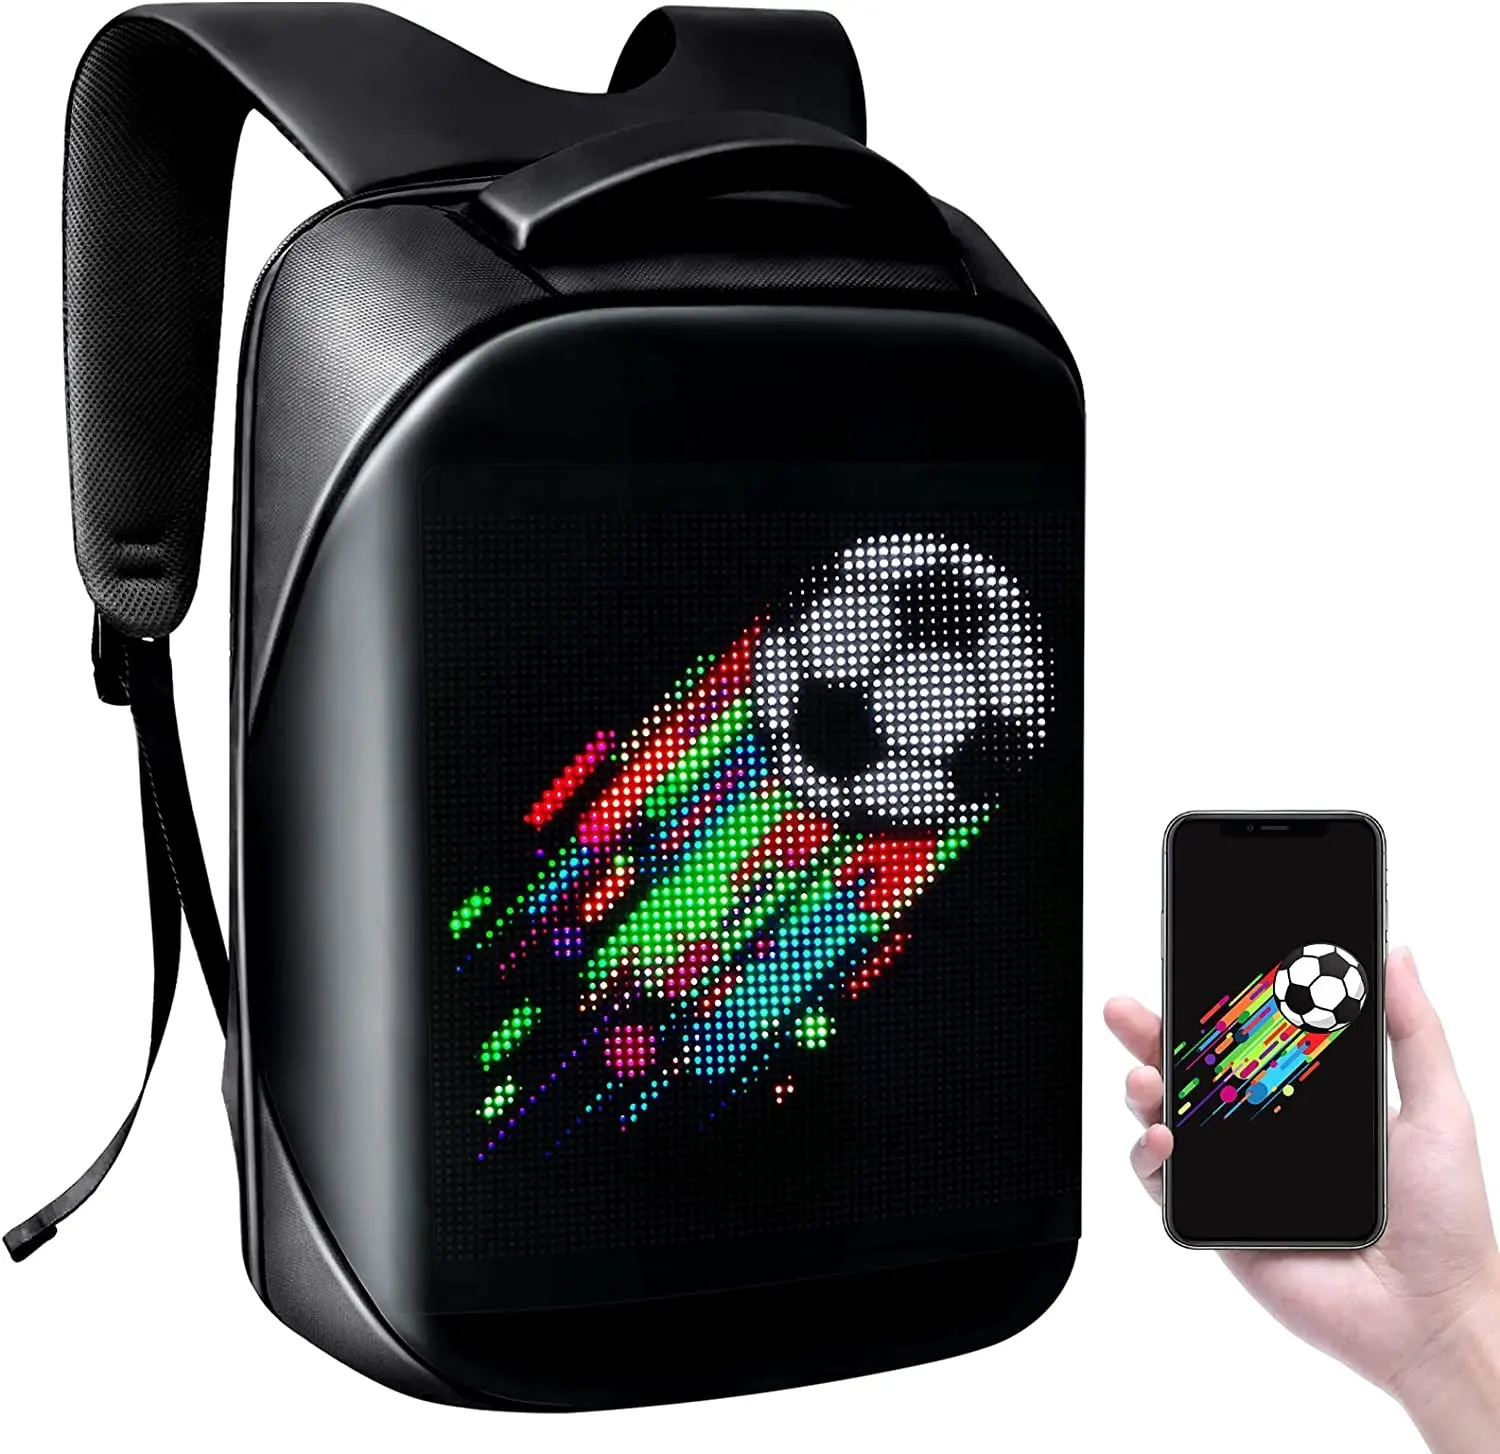 Smart bag with display